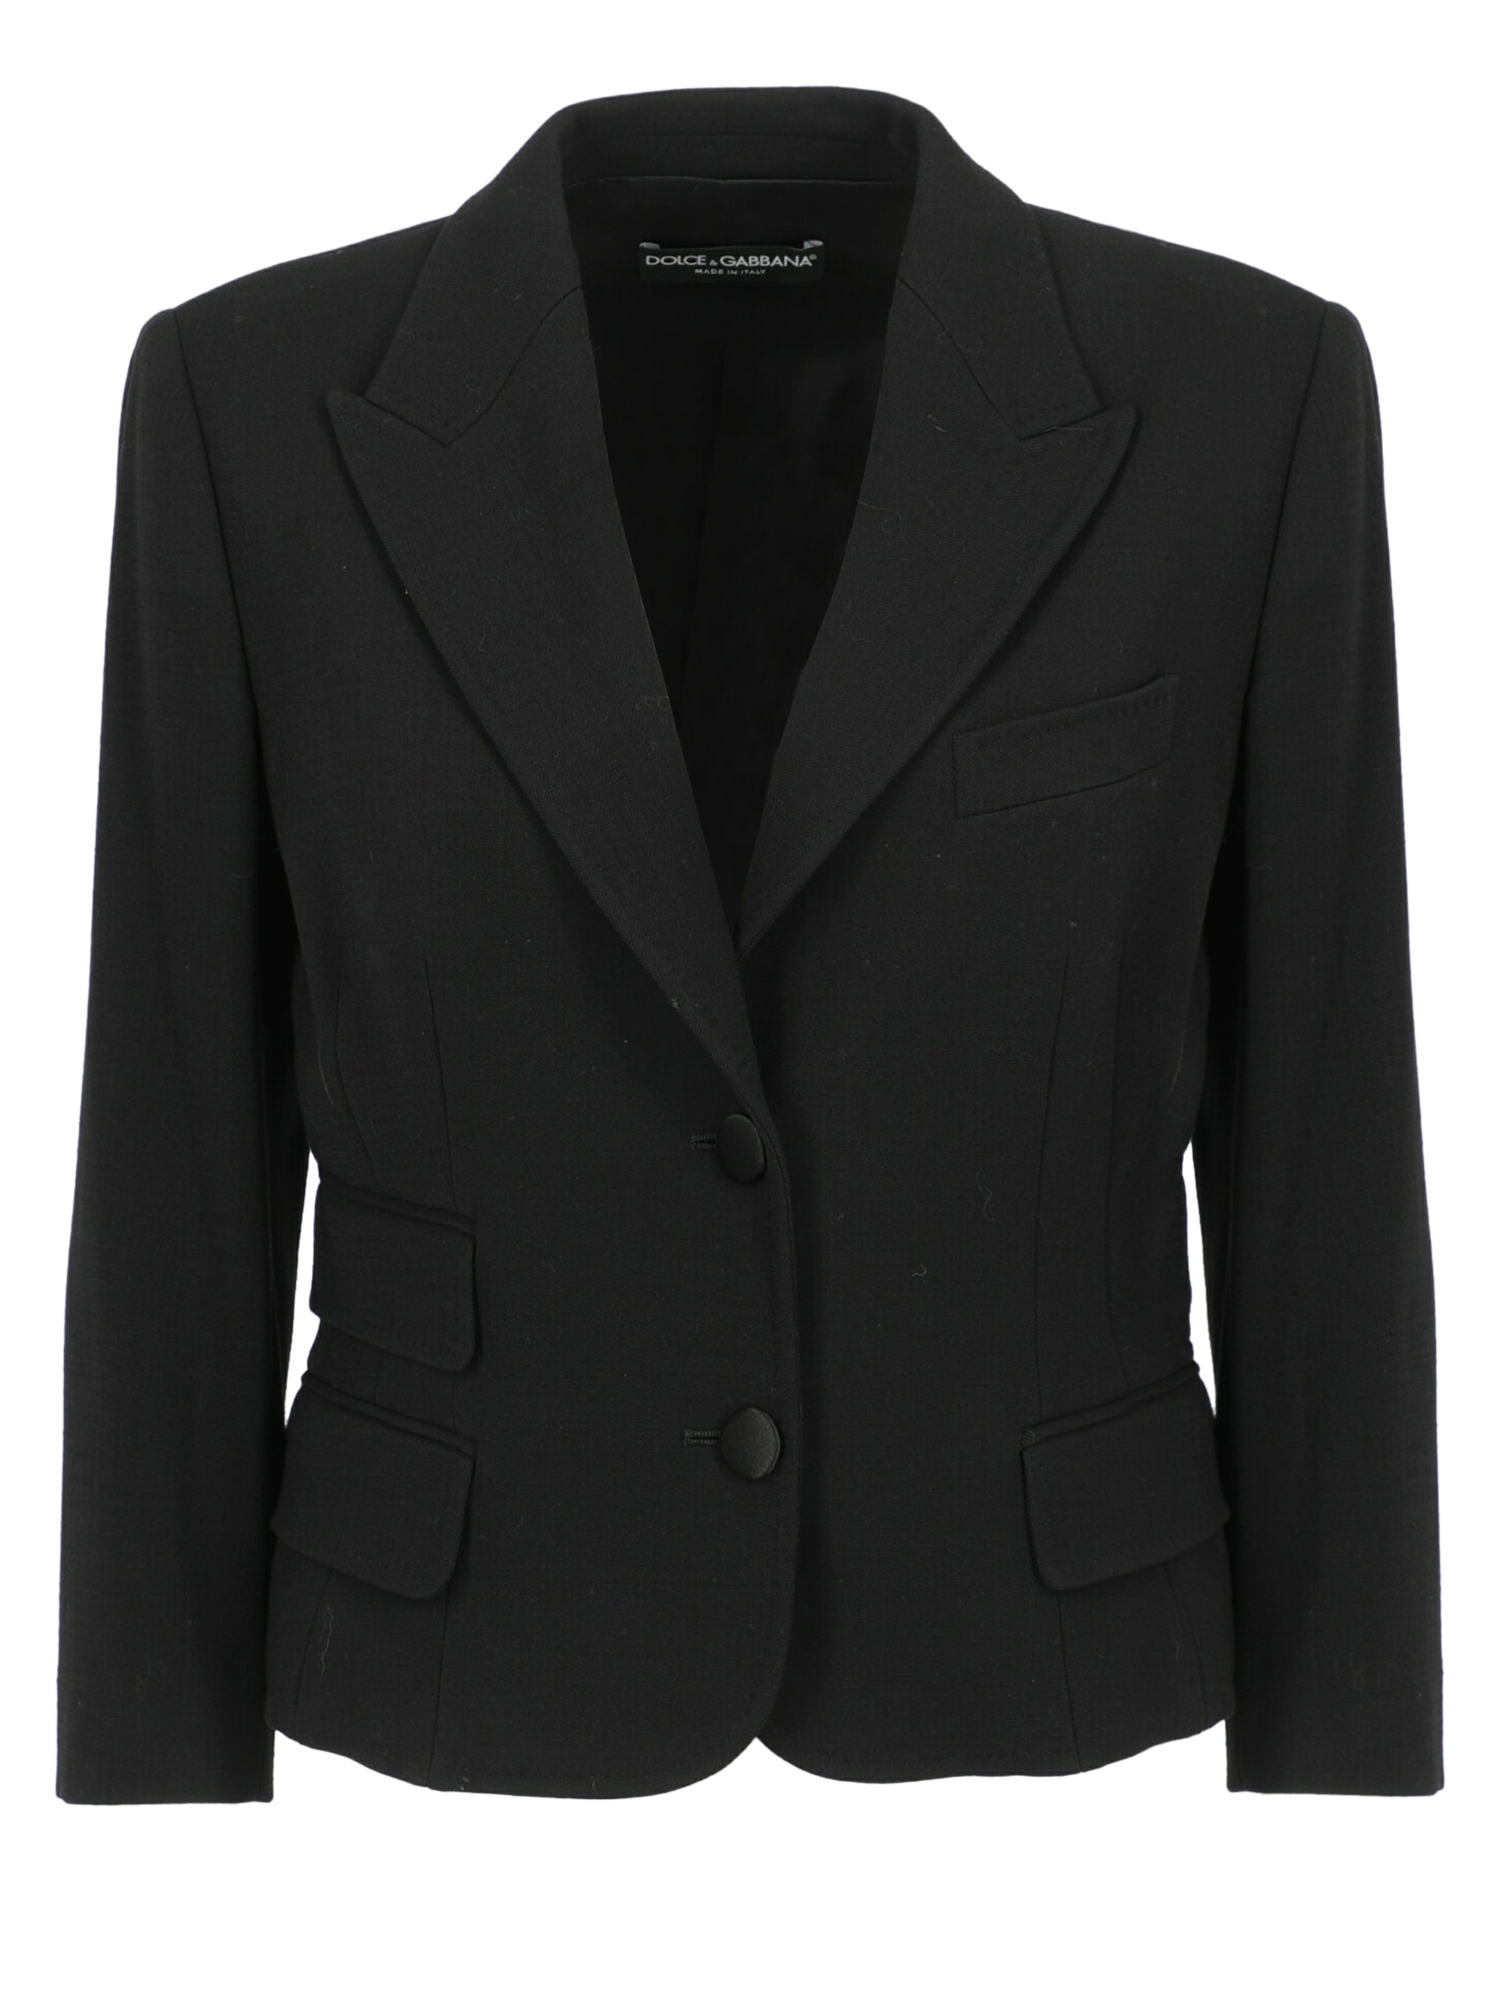 Vestes Pour Femme - Dolce & Gabbana - En Wool Black - Taille:  -